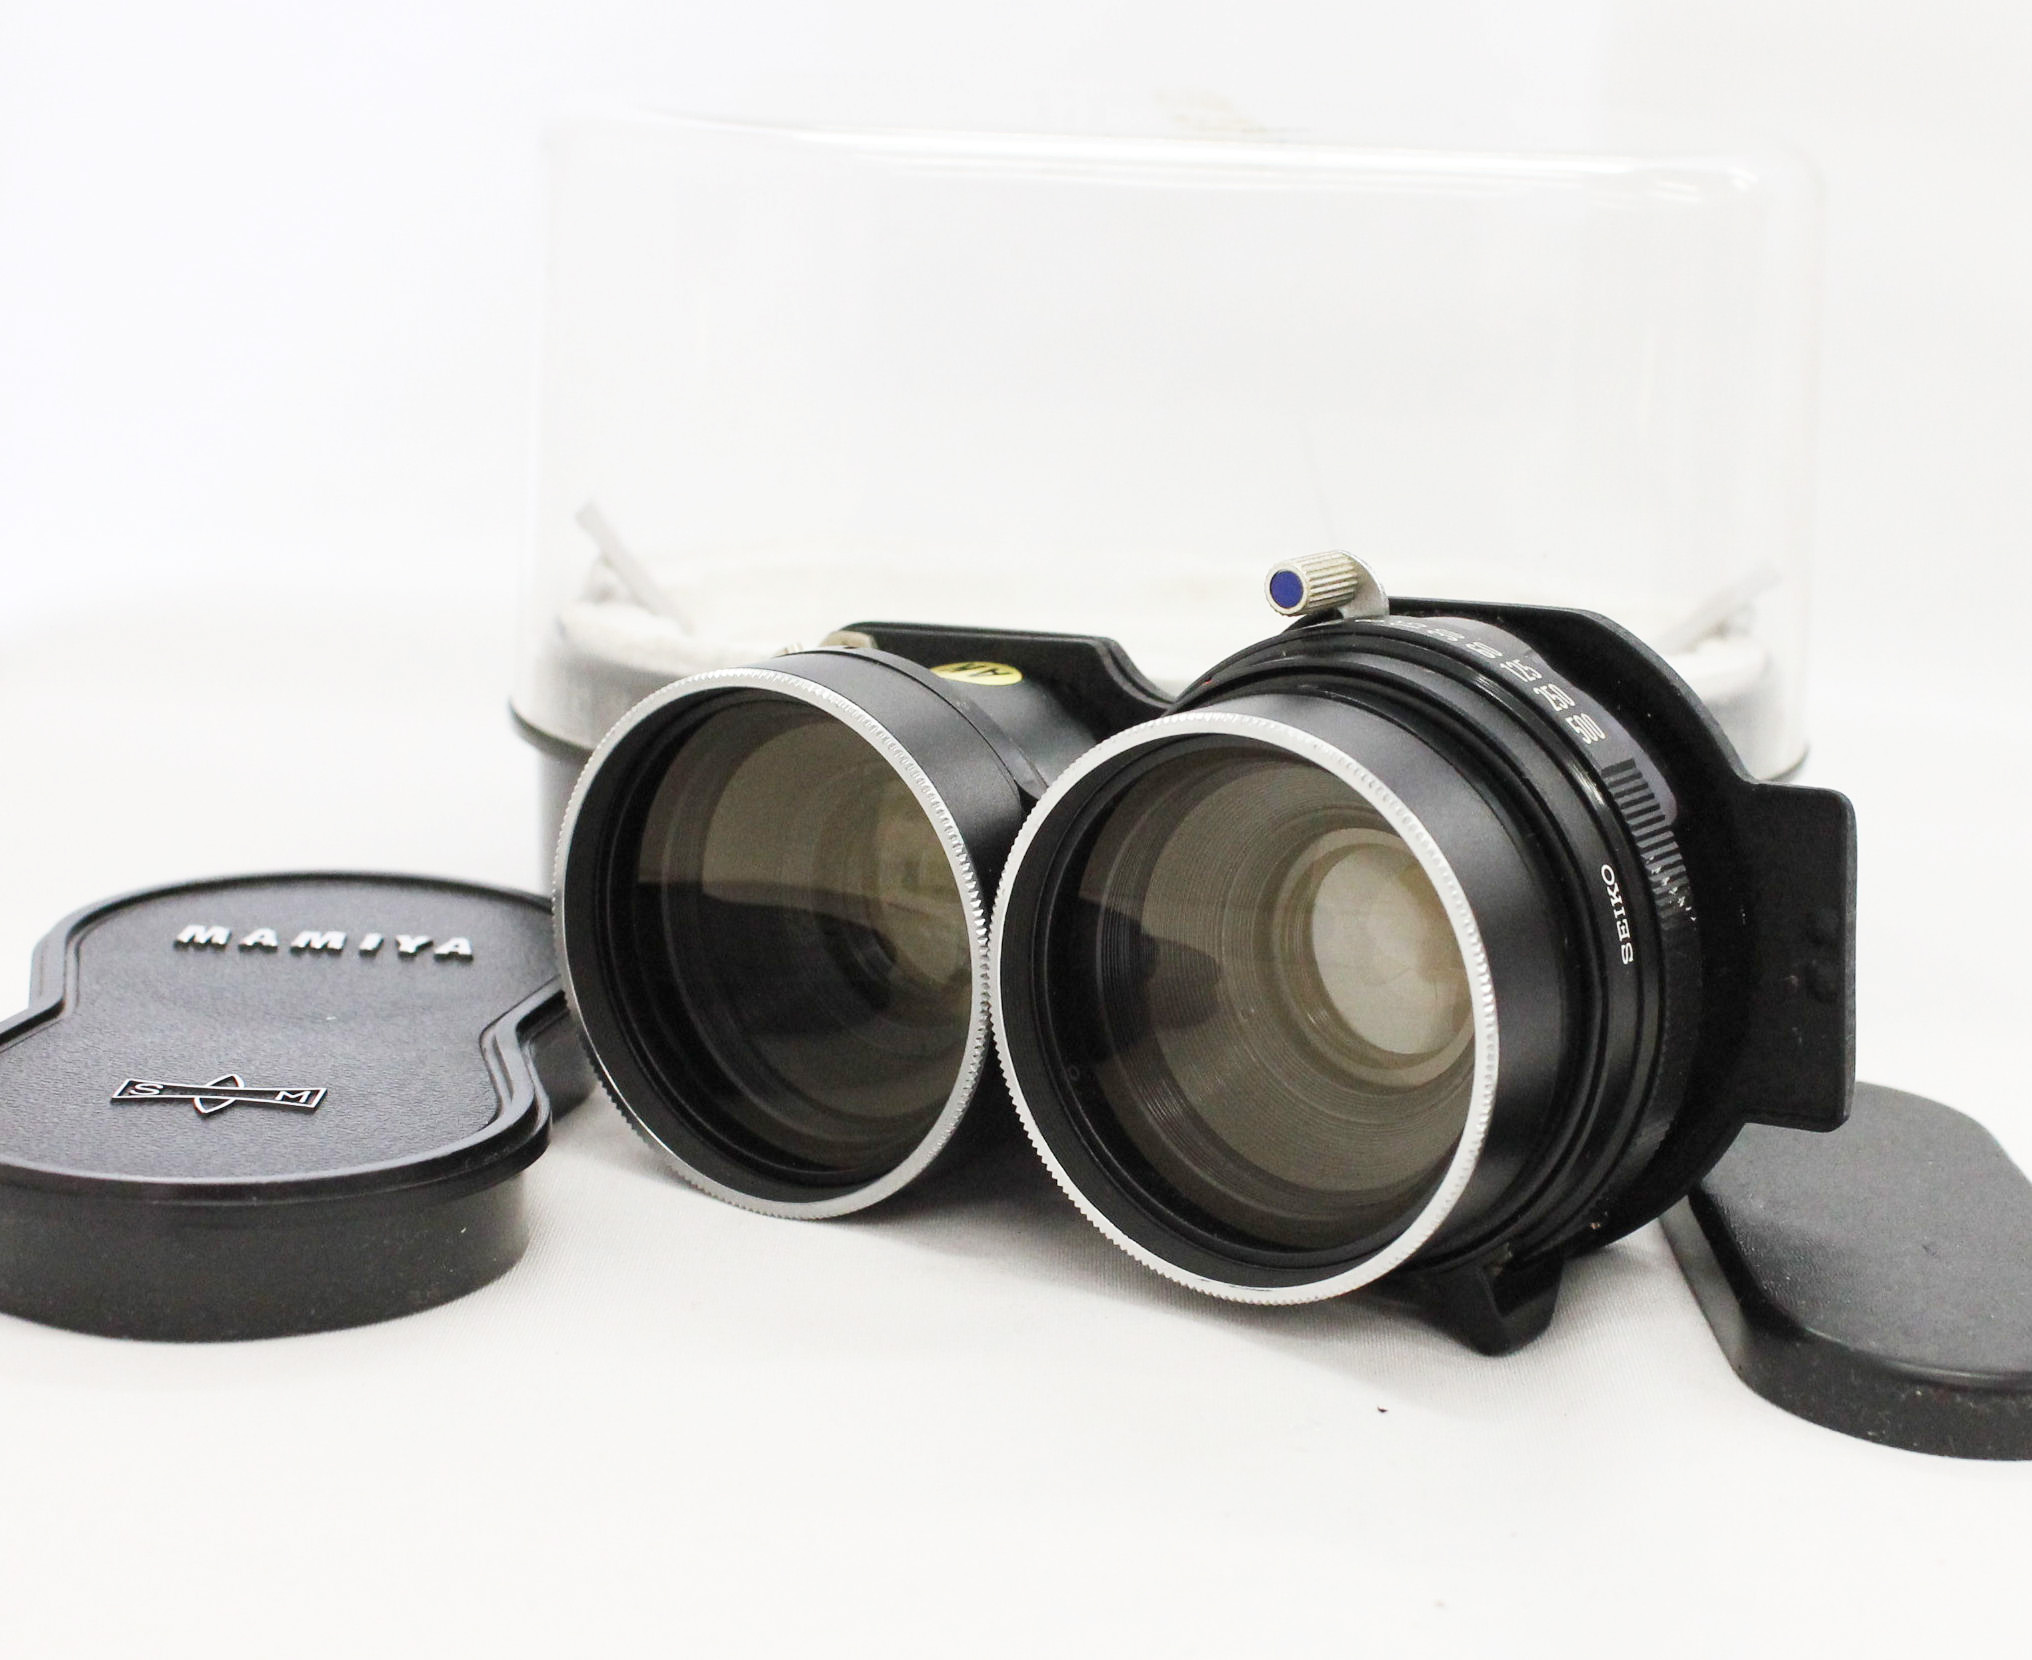 [Excellent++++] Mamiya Sekor 65mm F/3.5 Blue Dot TLR Lens for C3 C33 C220 C330 from Japan